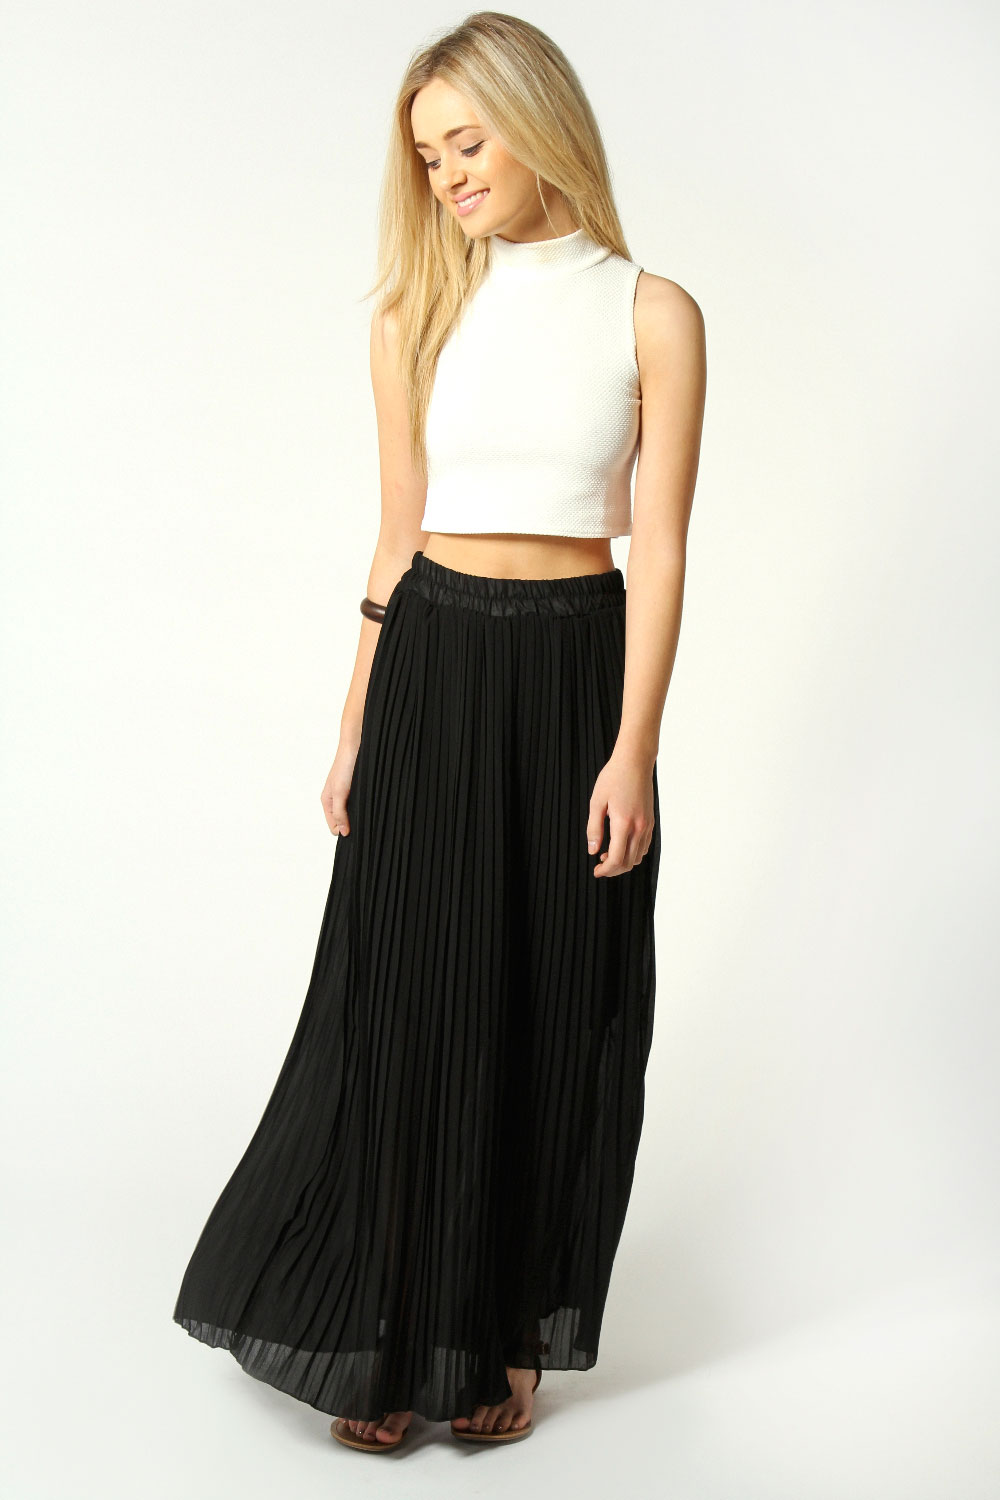 Long Black Maxi Skirt | Dressed Up Girl